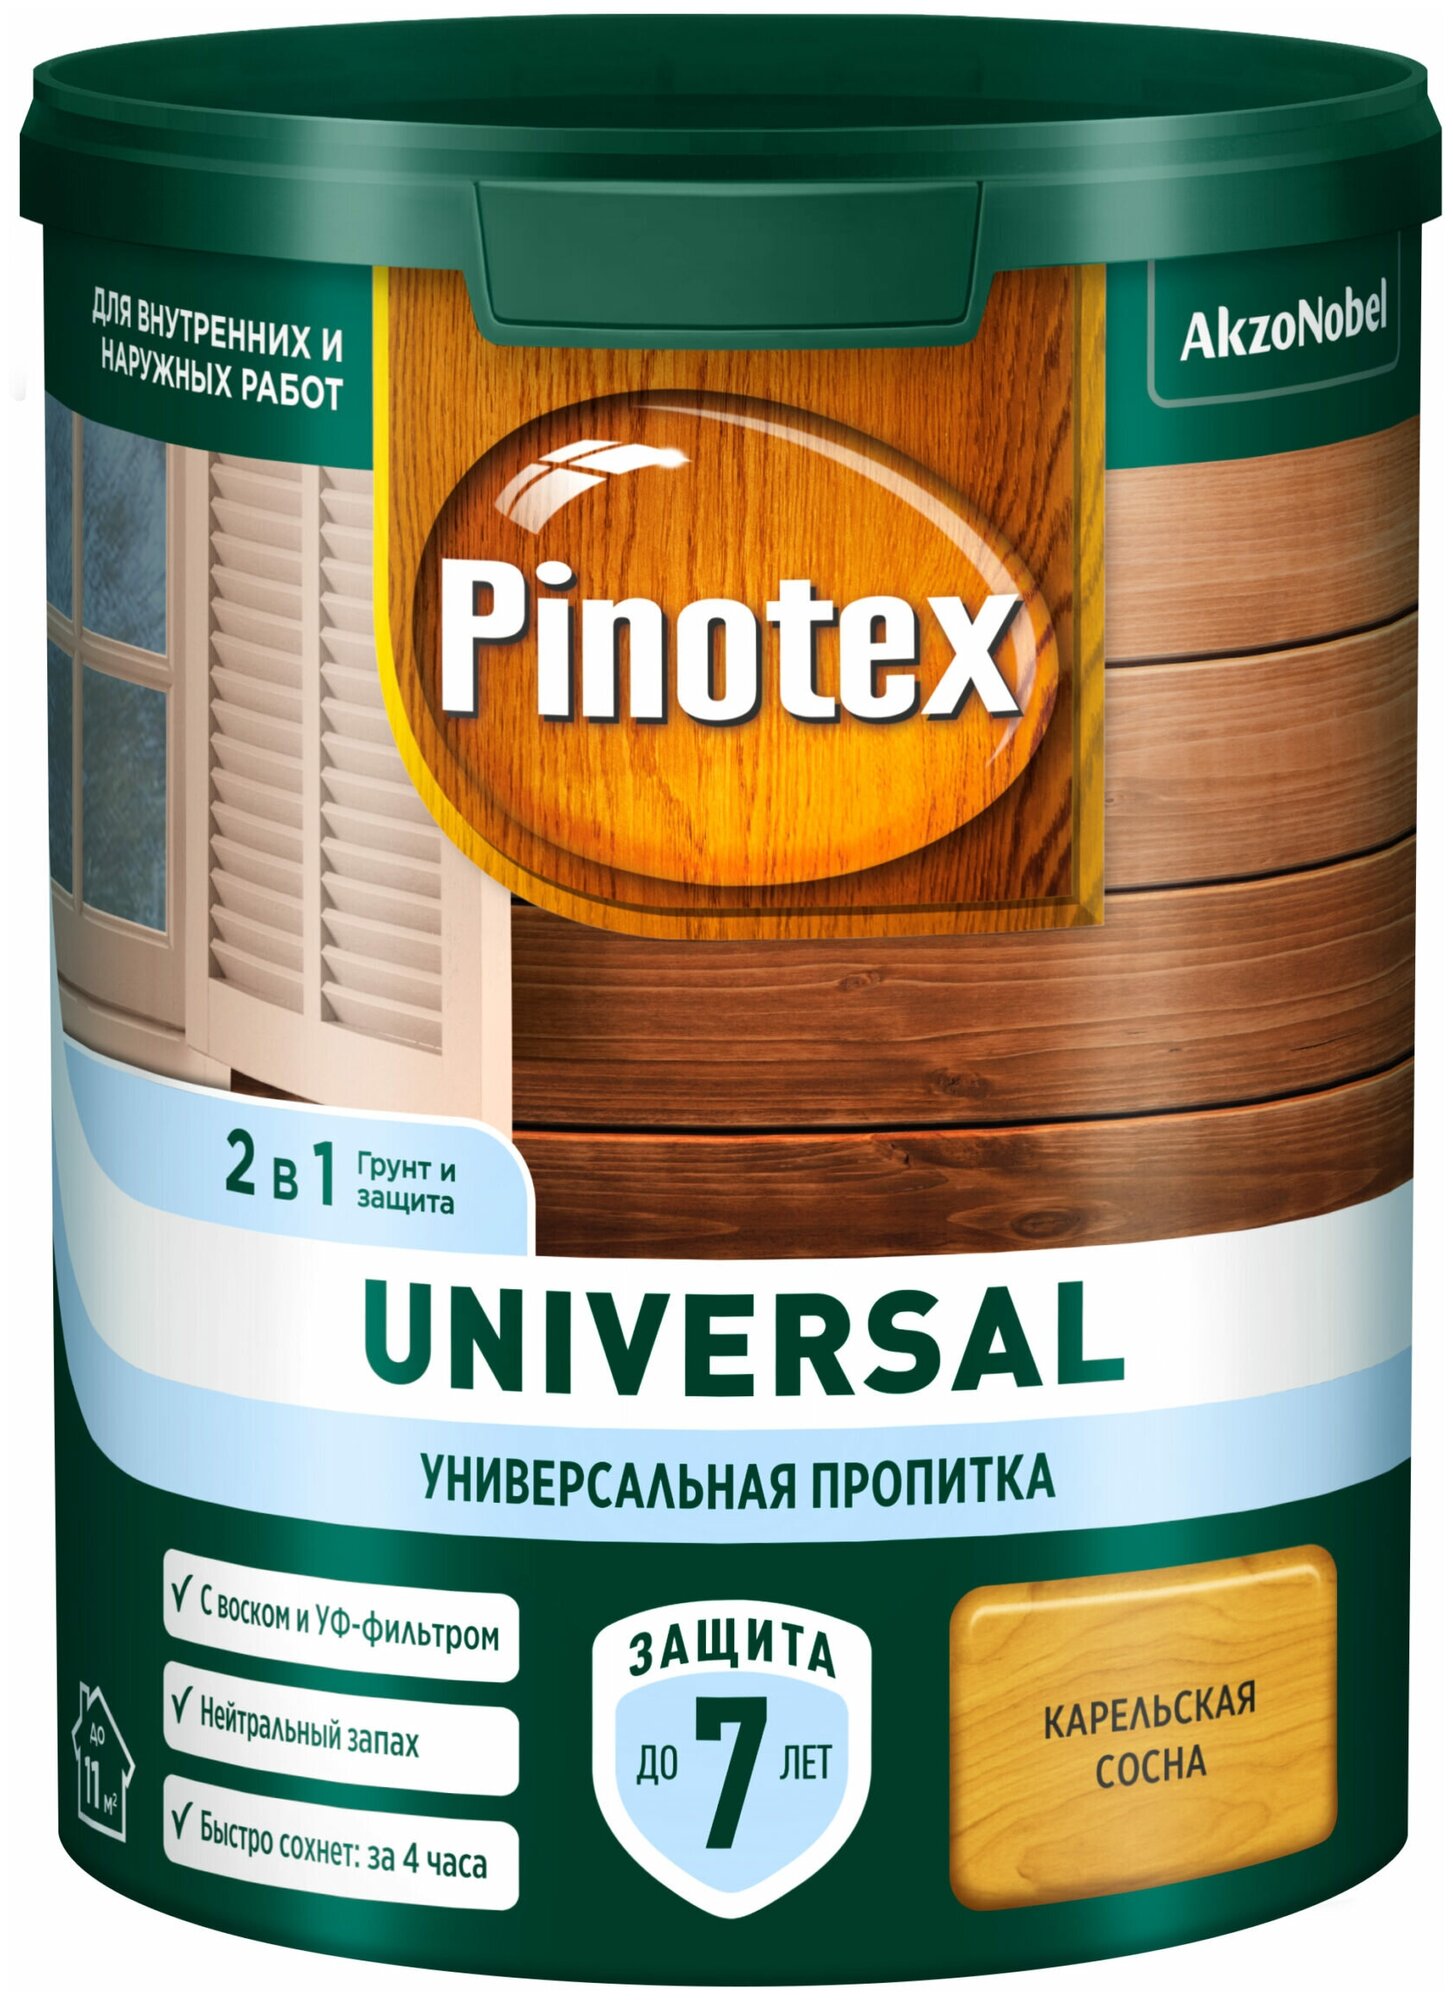 Pinotex Universal 2 в 1 универсальная пропитка для древесины Карельская сосна 0,9л